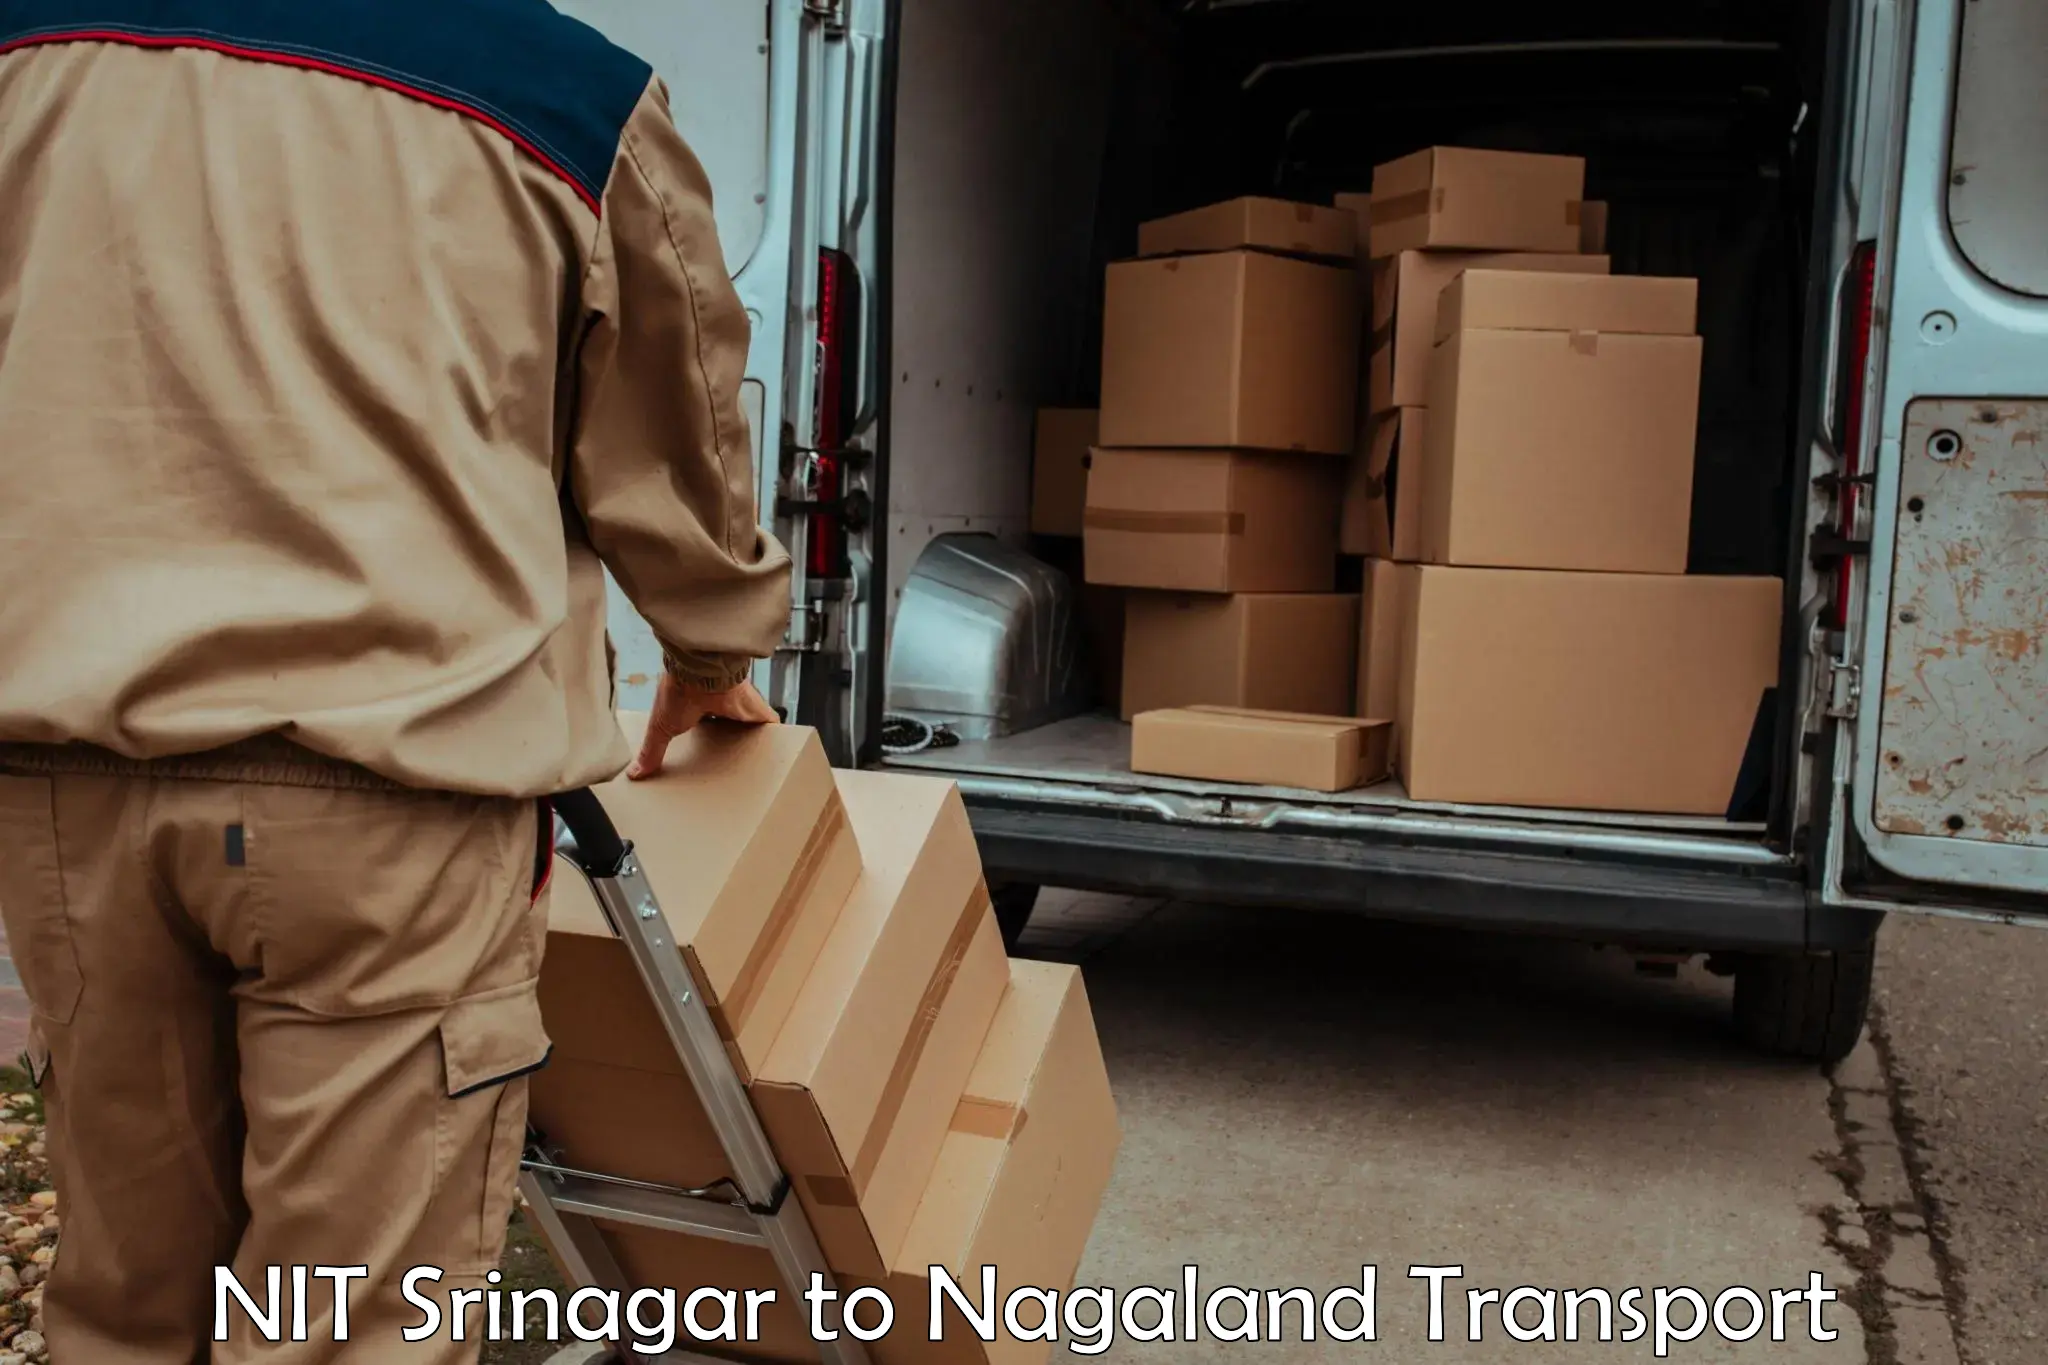 Road transport online services NIT Srinagar to Longleng